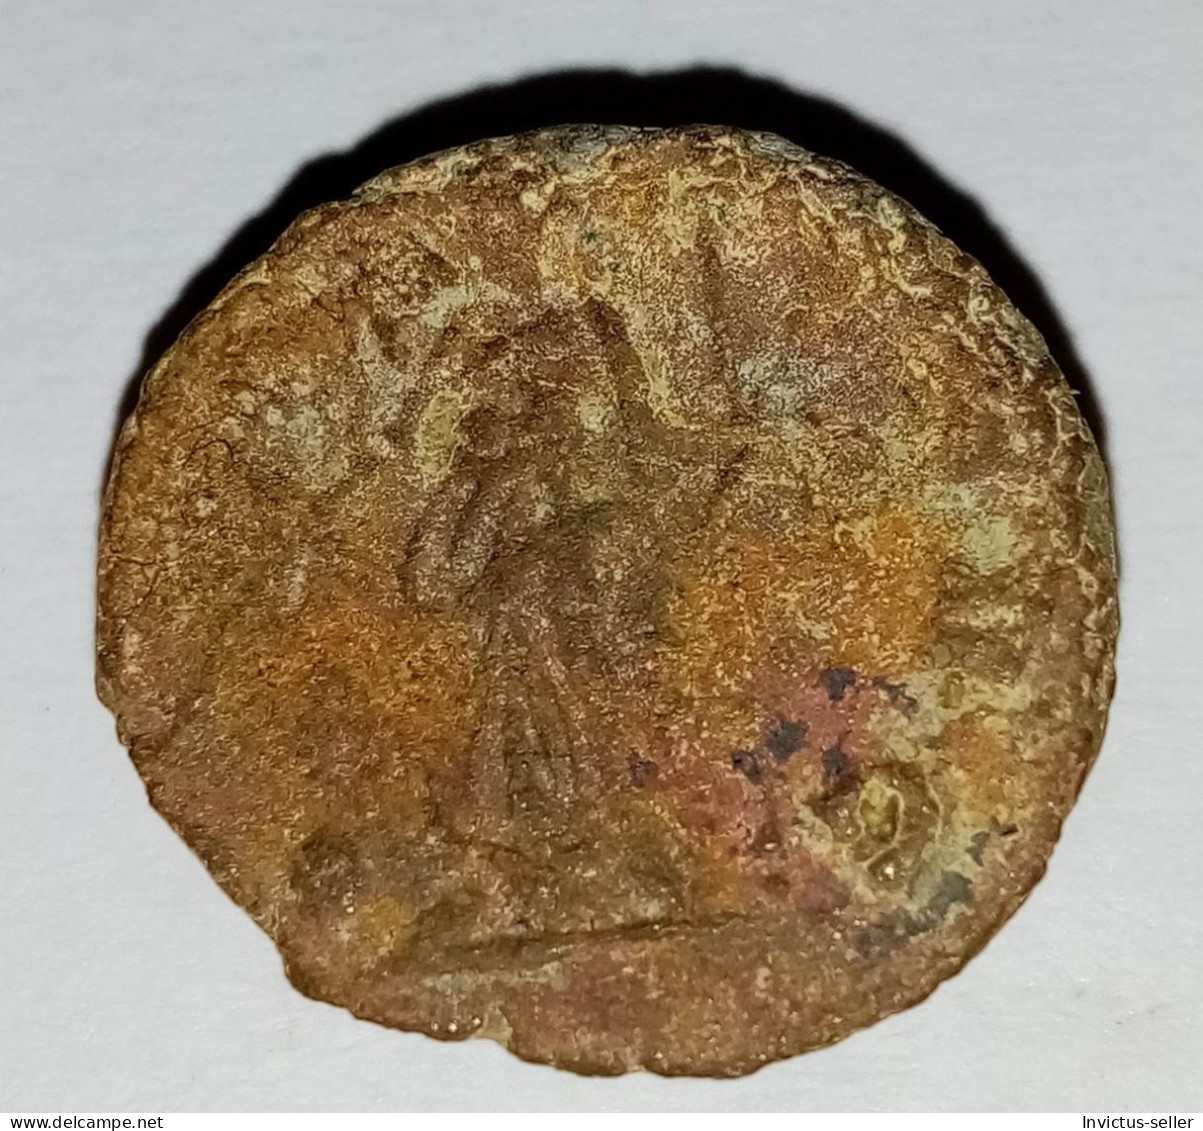 Moneta romana imperatore Marcus Aurelius Claudius "Gothicus -  ANCIENT ROMAN COIN  - EMPEROR CLAUDIUS GOTHICUS - 268-270